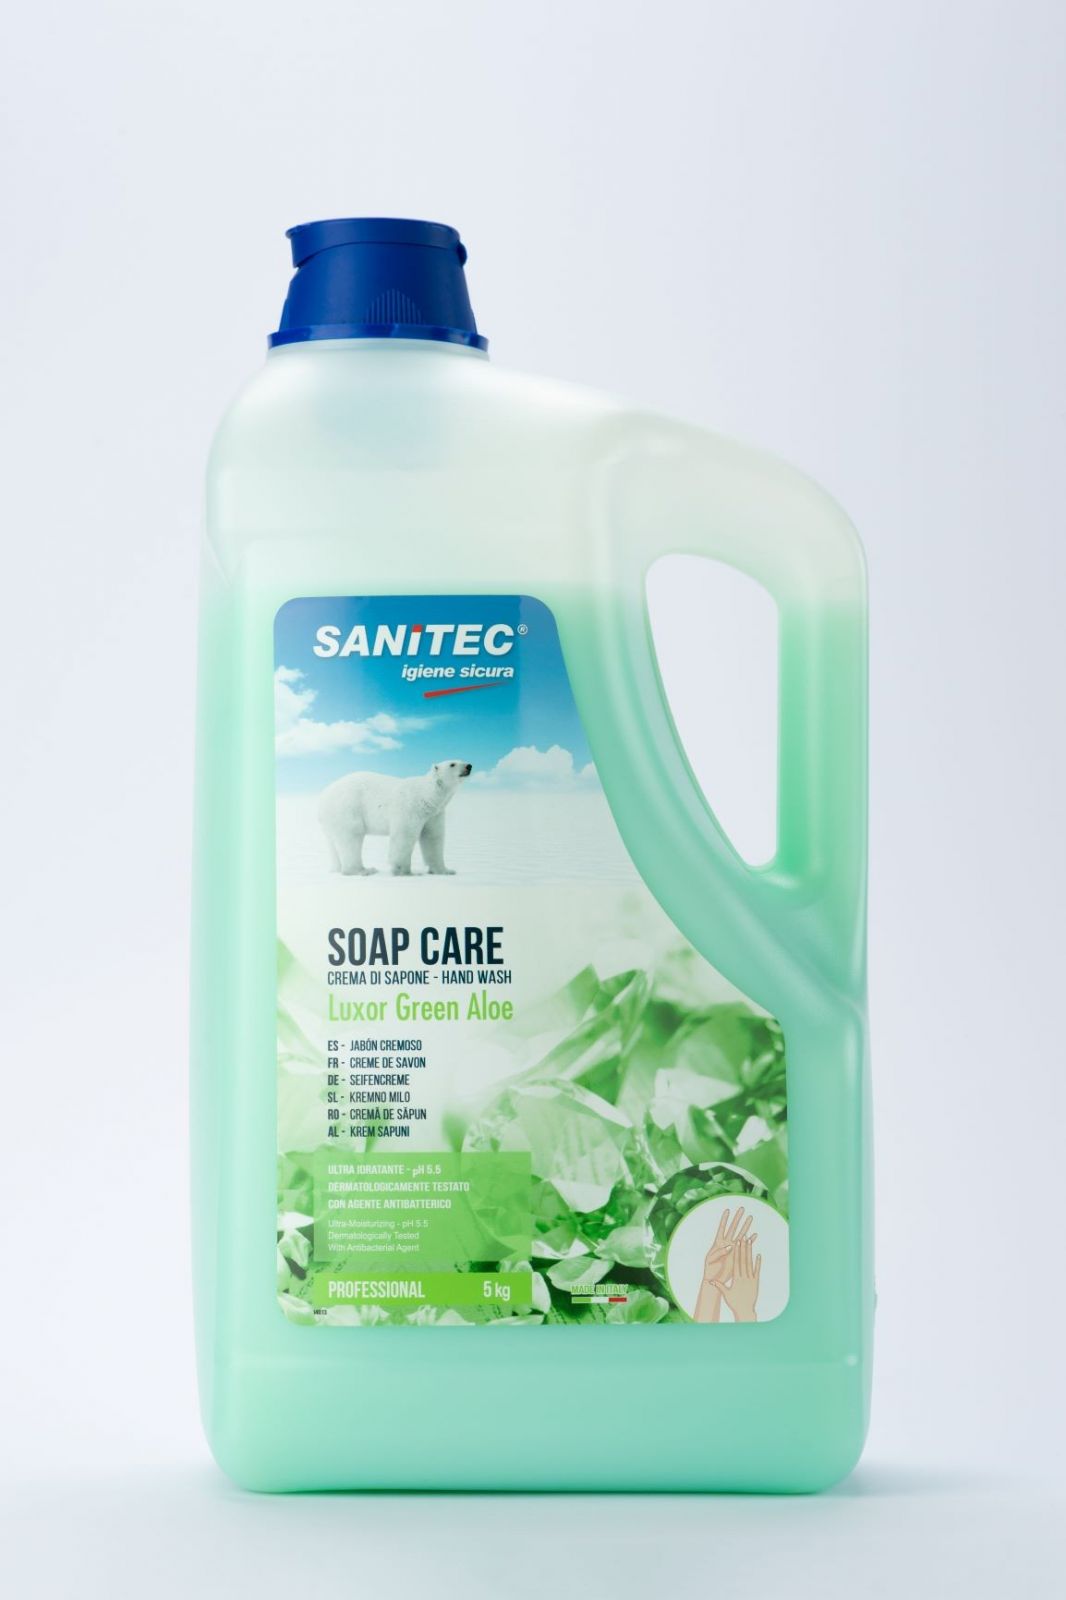 Immagine Sanitec soap care luxor green aloe 5kg sapone liquido